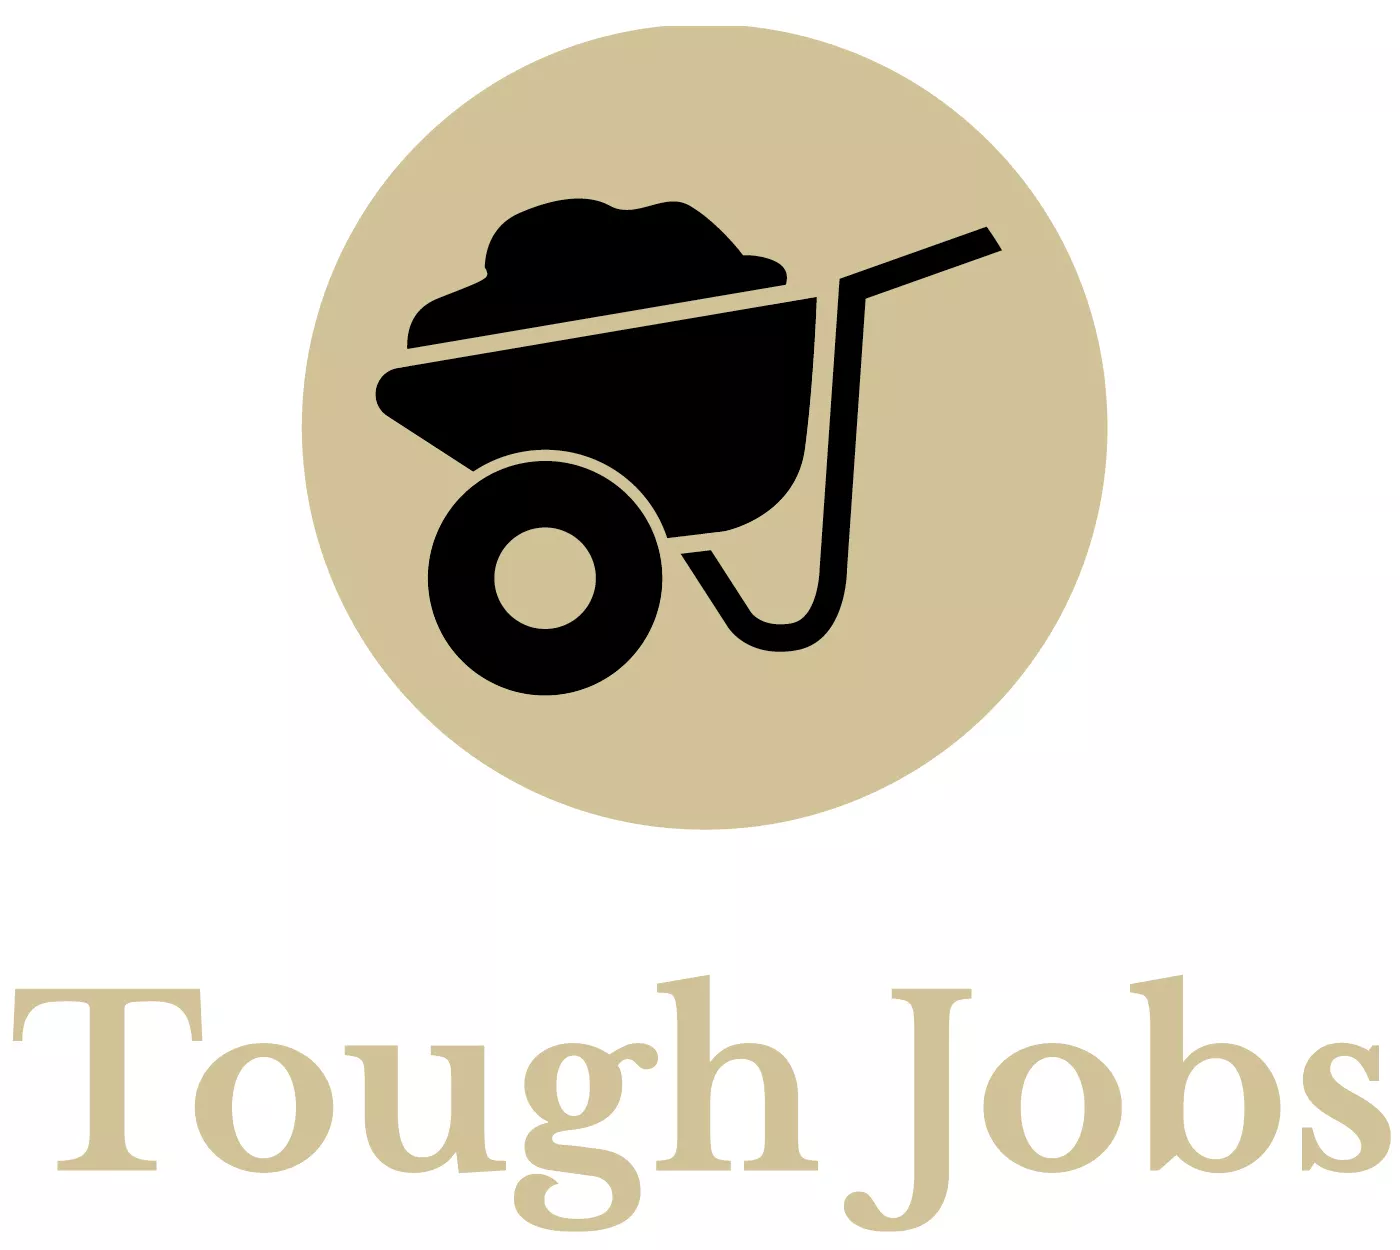 tough jobs icon